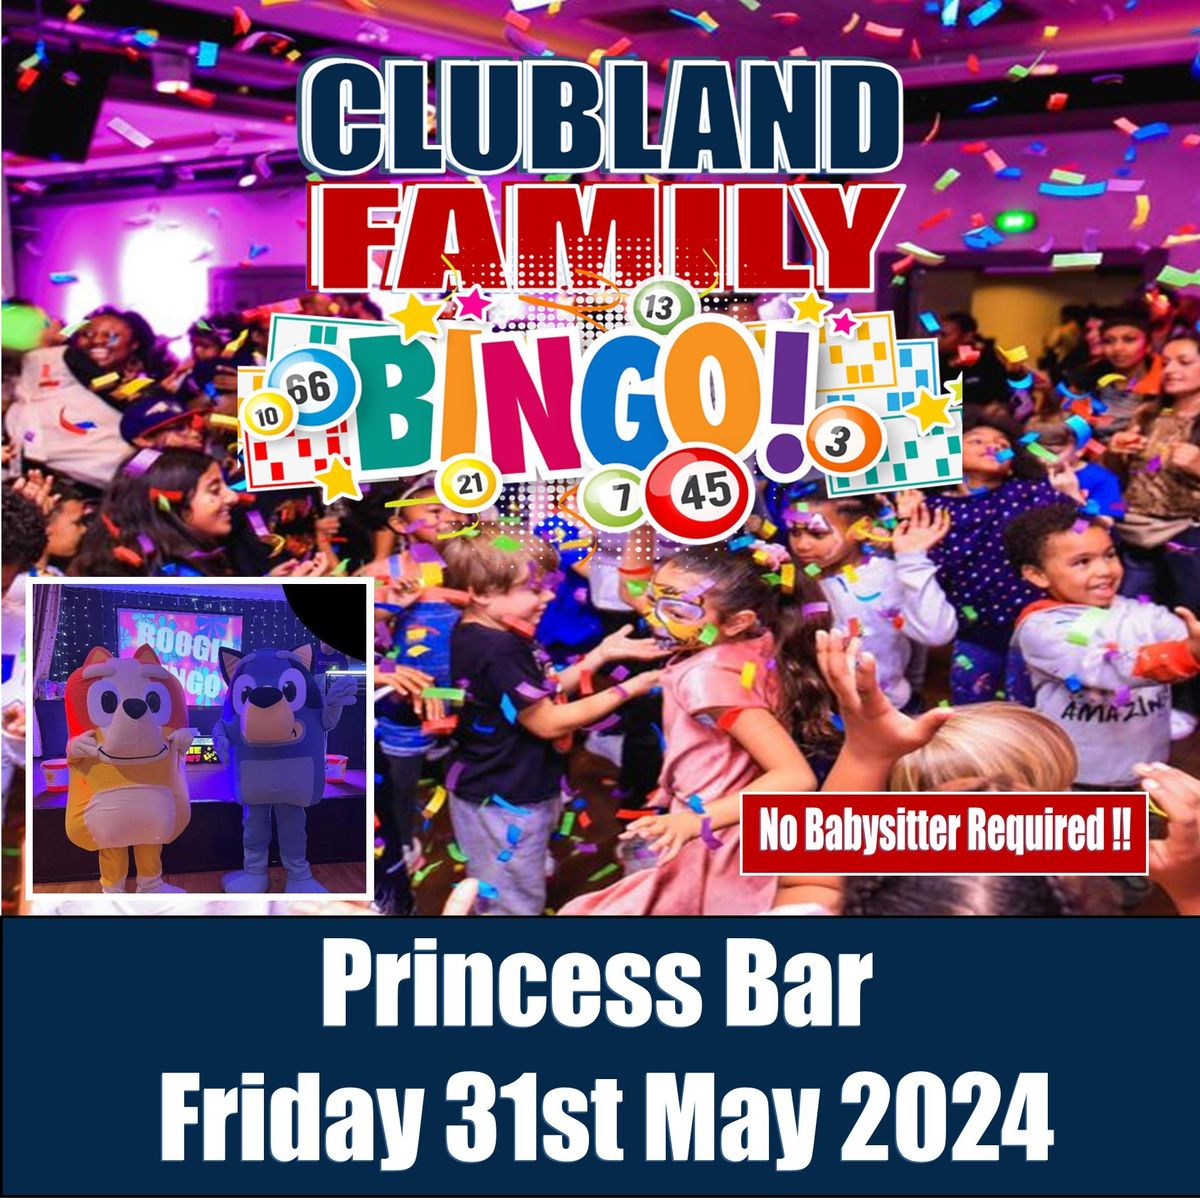 Glasgow - Clubland Family Bingo Party